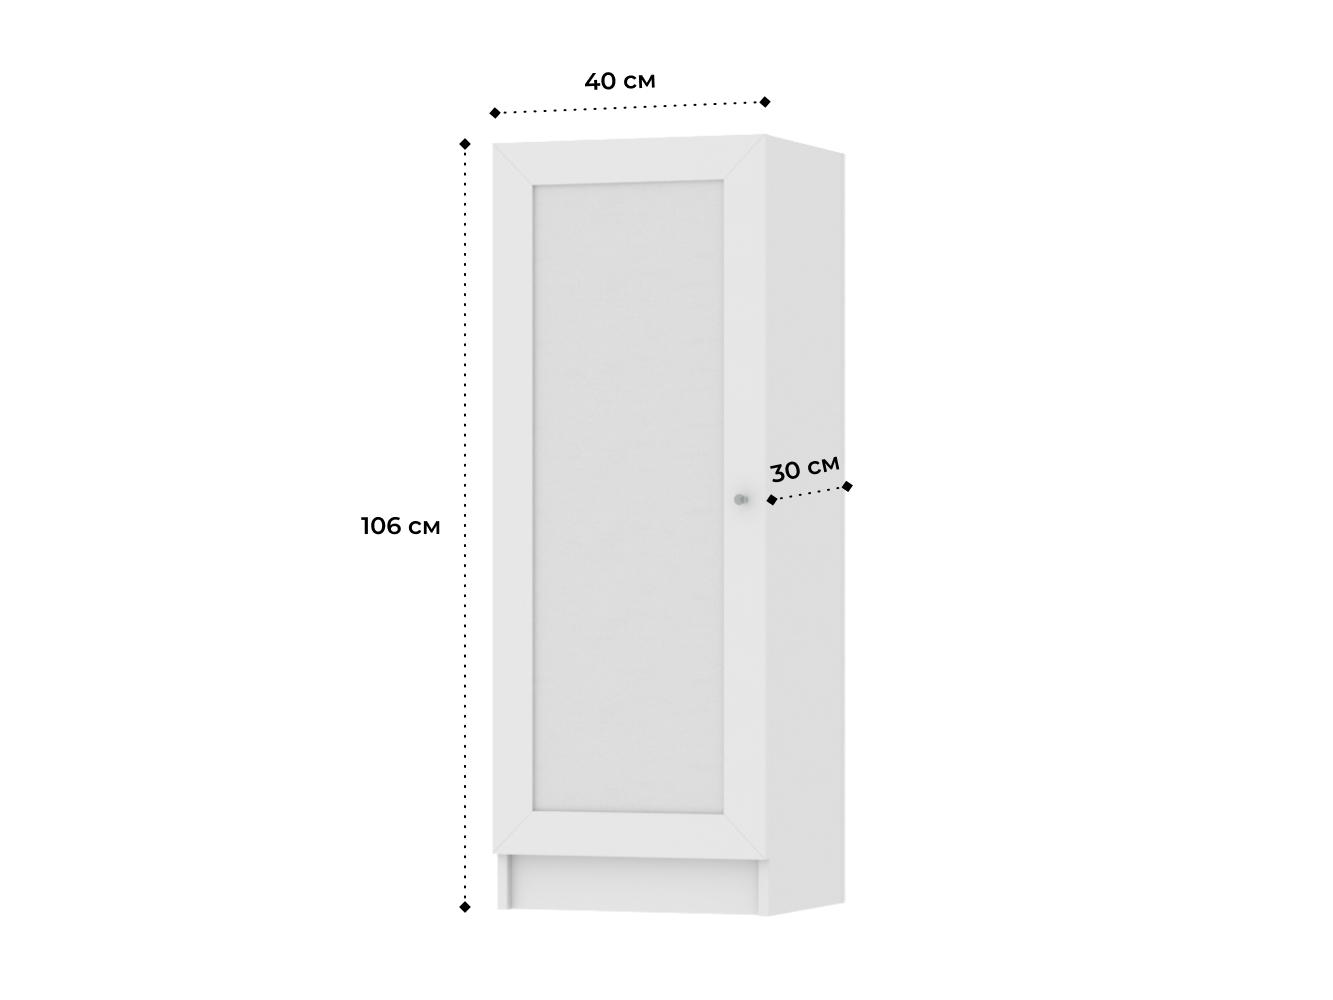 Комод Билли 212 white ИКЕА (IKEA) изображение товара